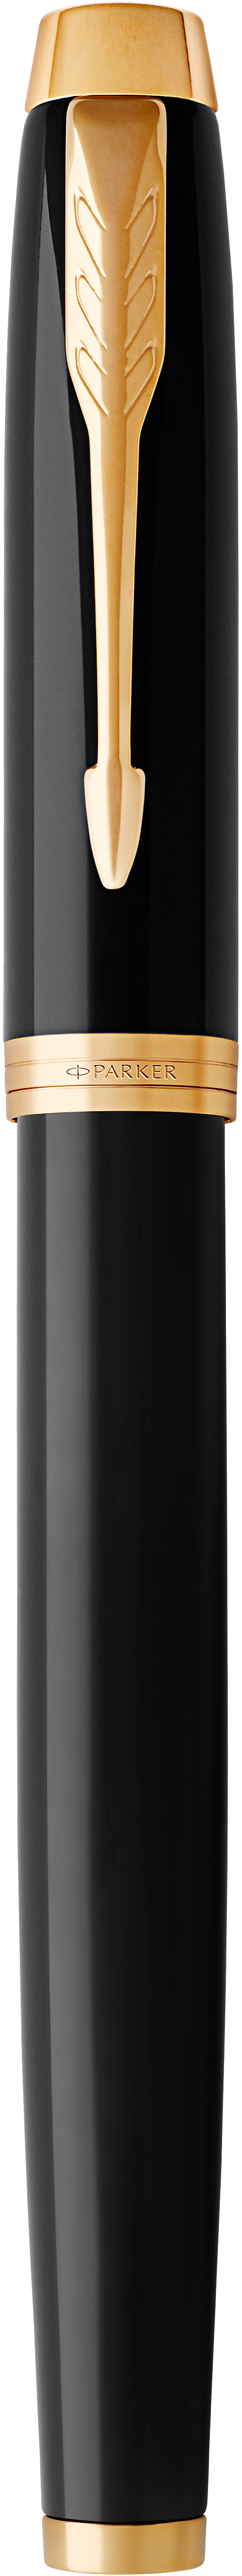 PARKER Stylo IM GC M 1931652 noir